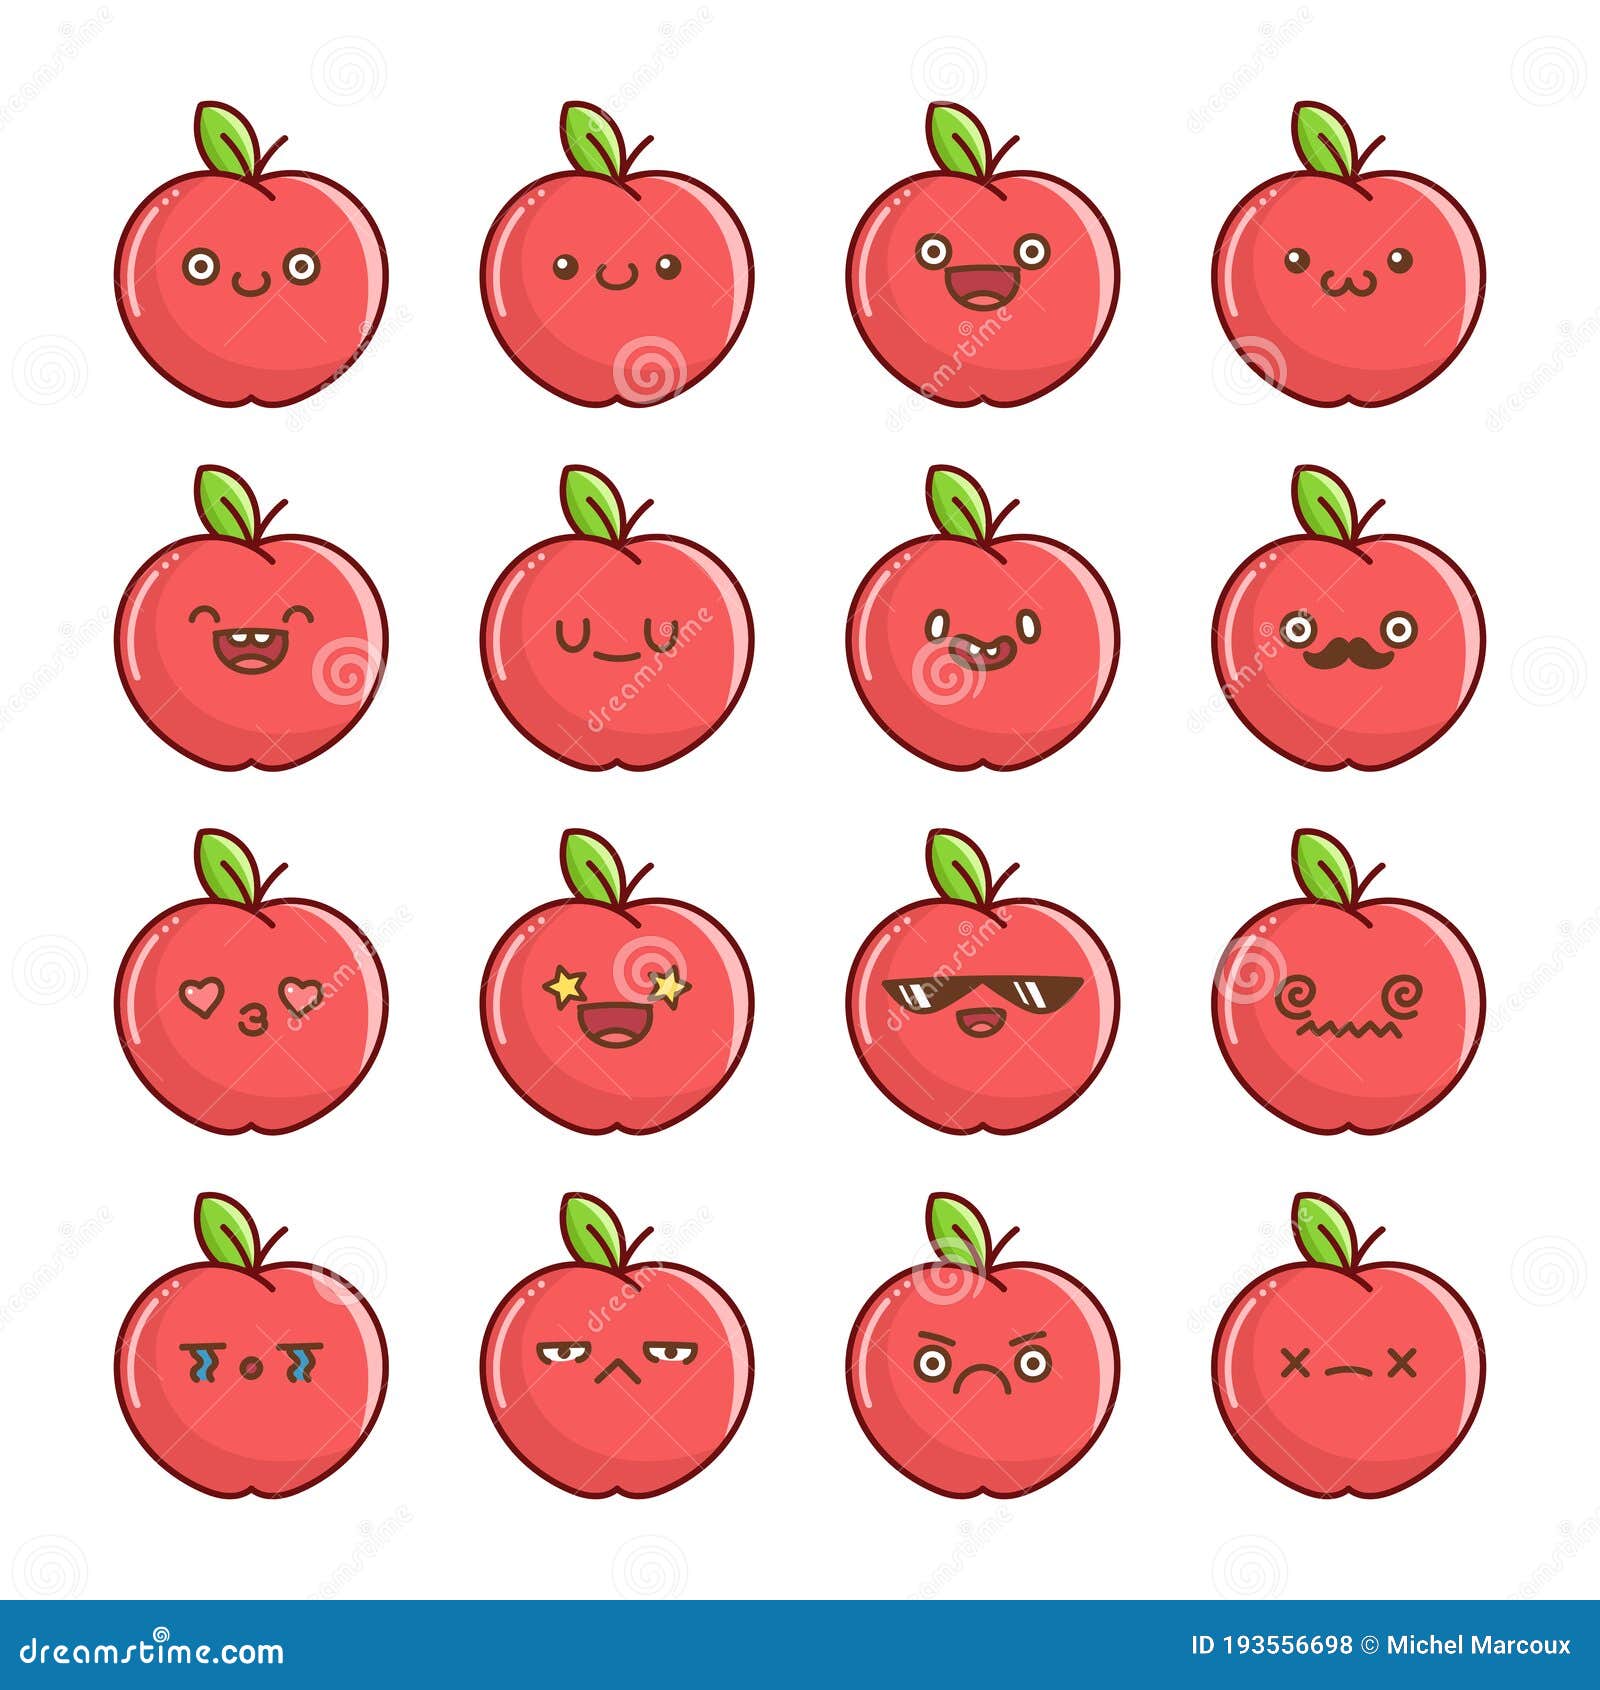 Với biểu tượng trái táo Kawaii đỏ vui nhộn, bạn sẽ không chỉ có một biểu tượng treo trên điện thoại mà còn mang lại cho bản thân niềm vui với sự đáng yêu của nó. Hãy cùng chiêm ngưỡng và chọn cho mình một biểu tượng đáng yêu này nhé!